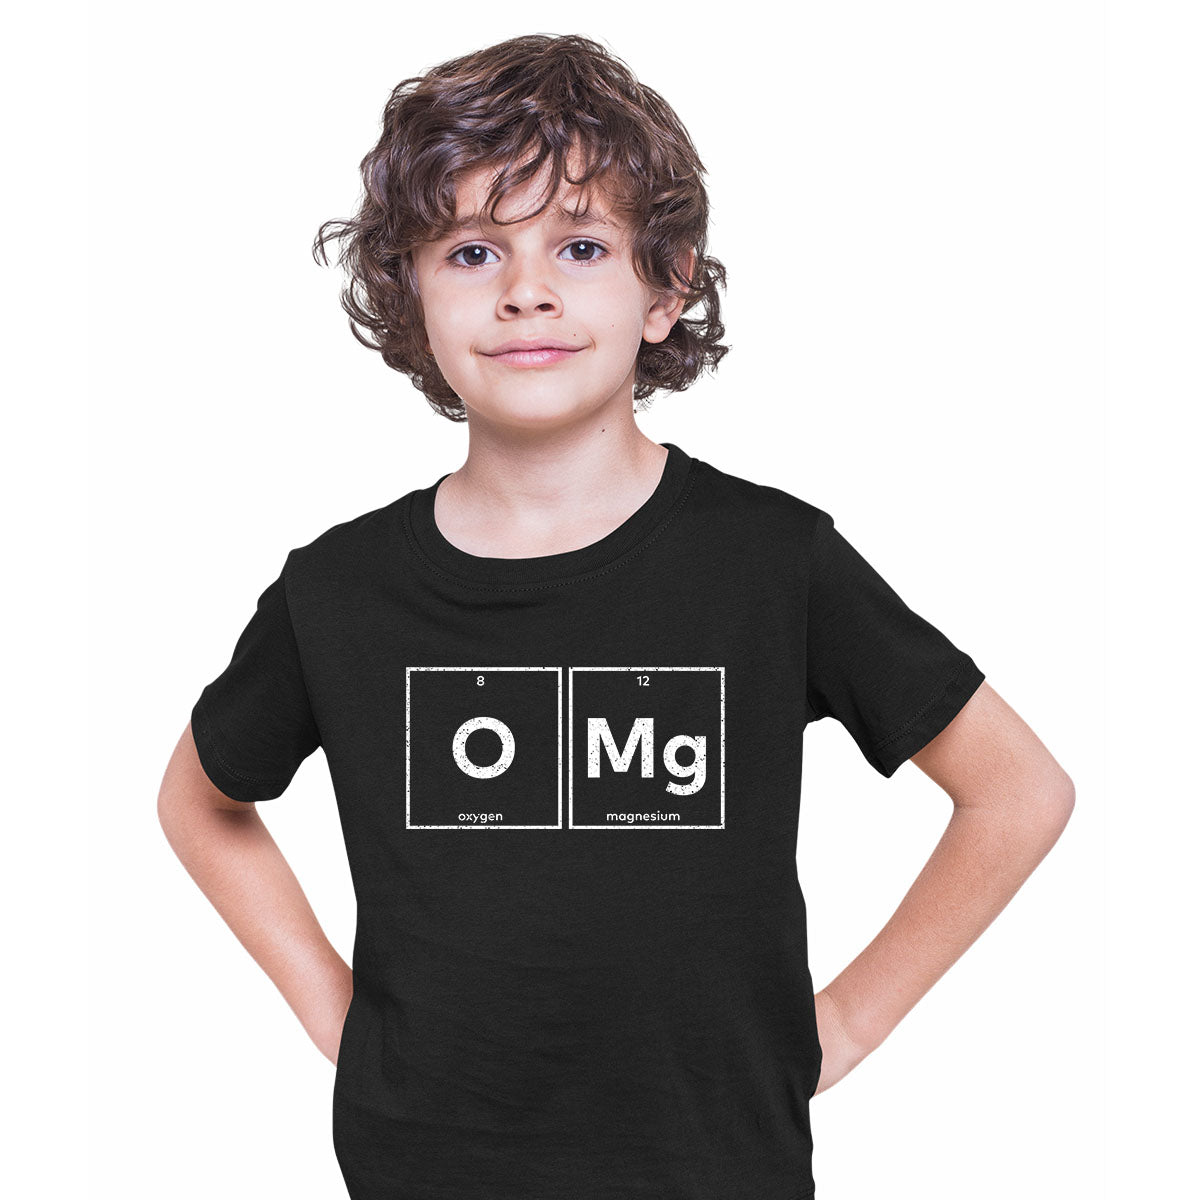 OMG Funny T-Shirt Novelty Joke Tee Rude Gift Him Dad Birthday Slogan T-shirt for Kids - Kuzi Tees